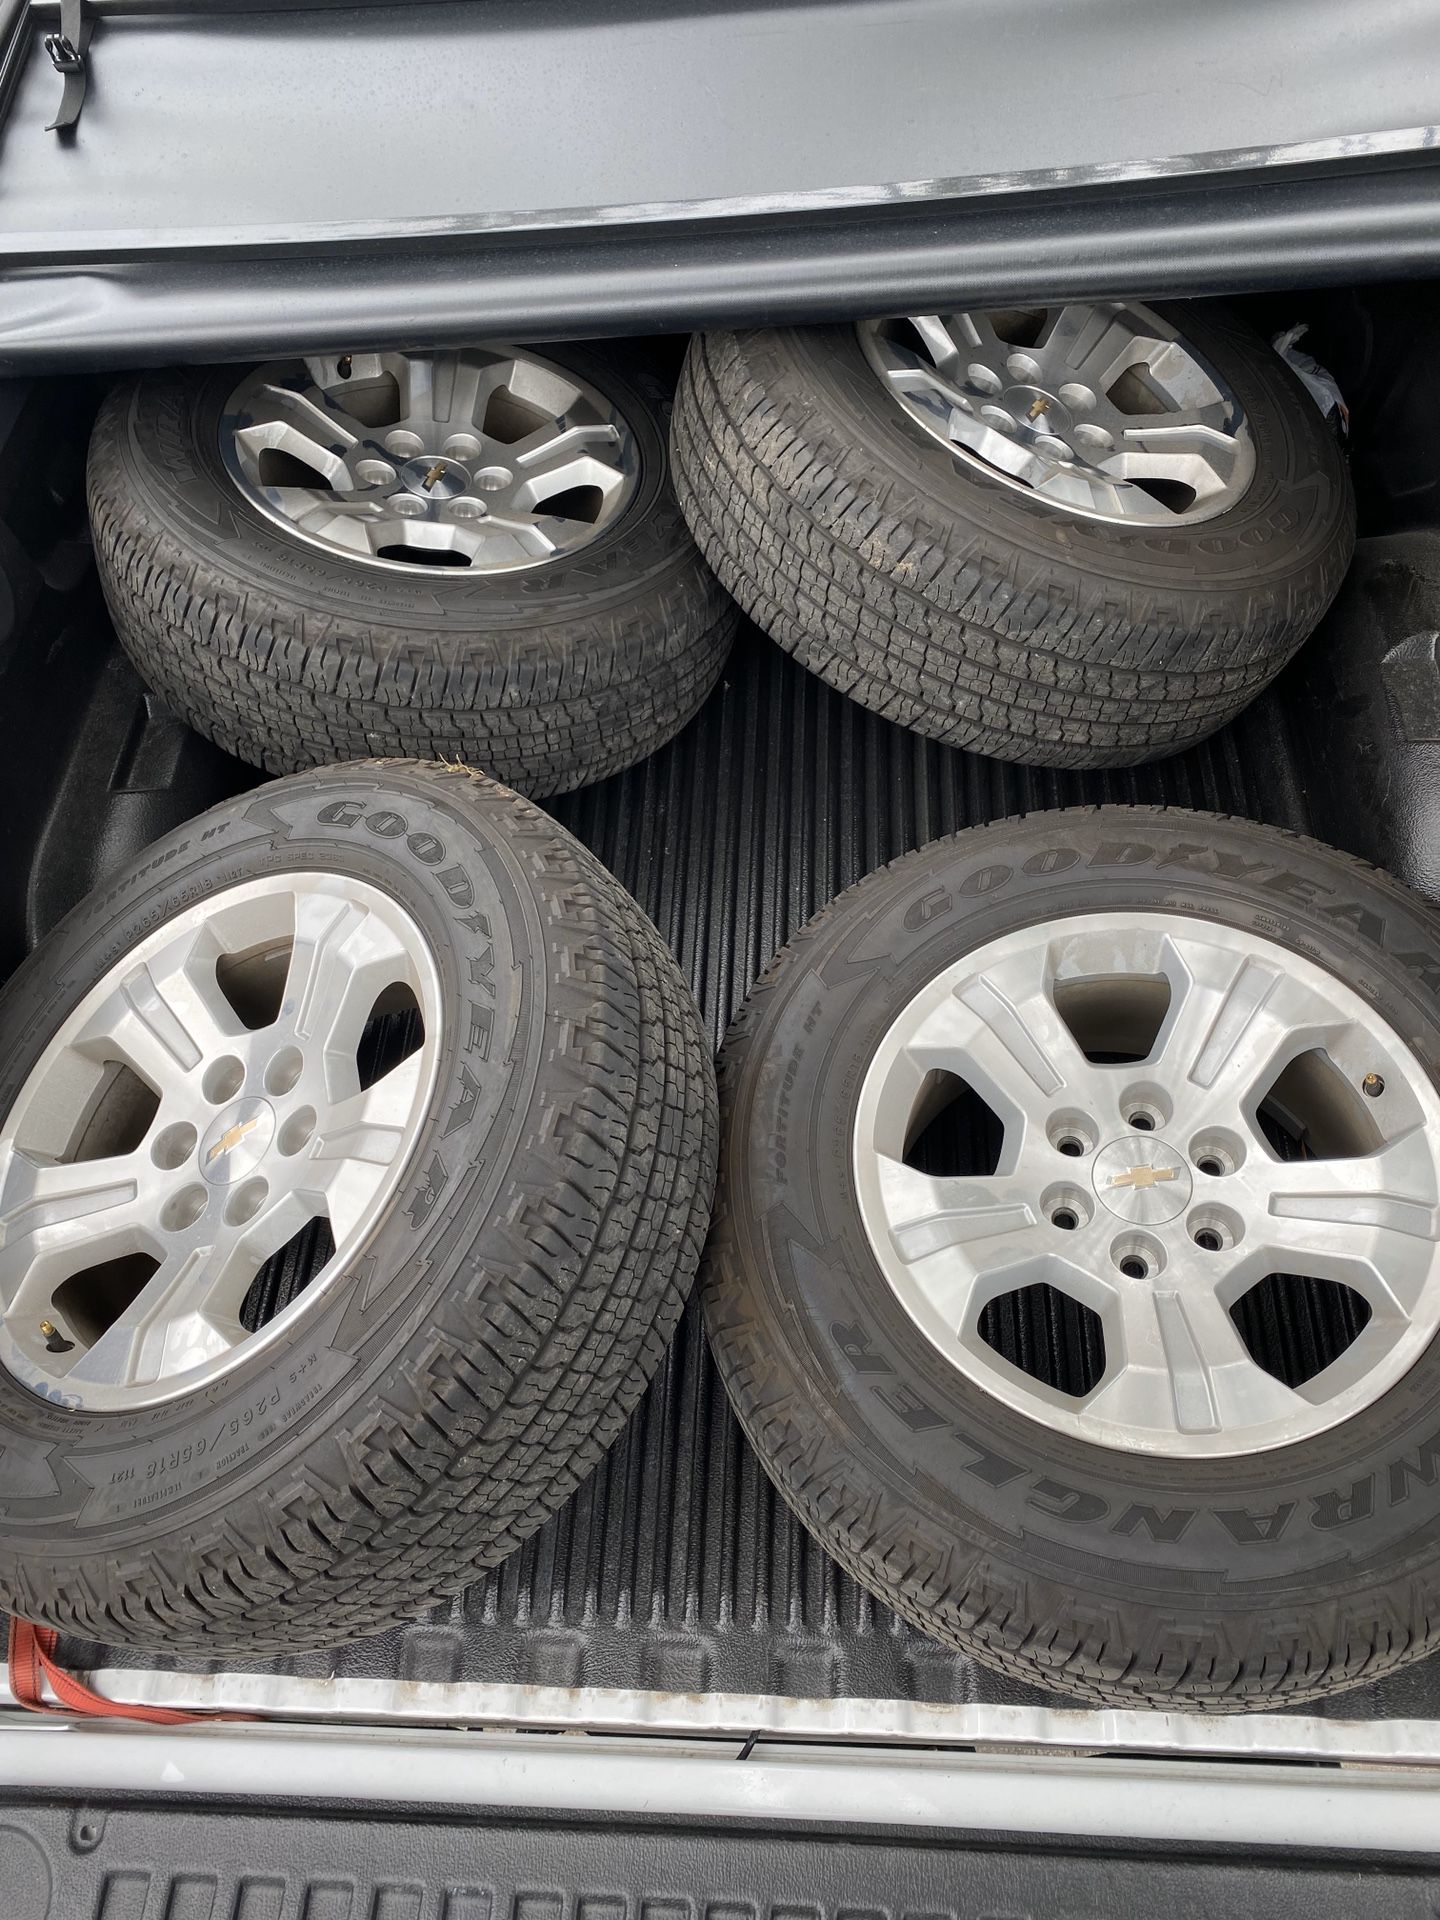 2018 Z71 Silverado wheels and tires